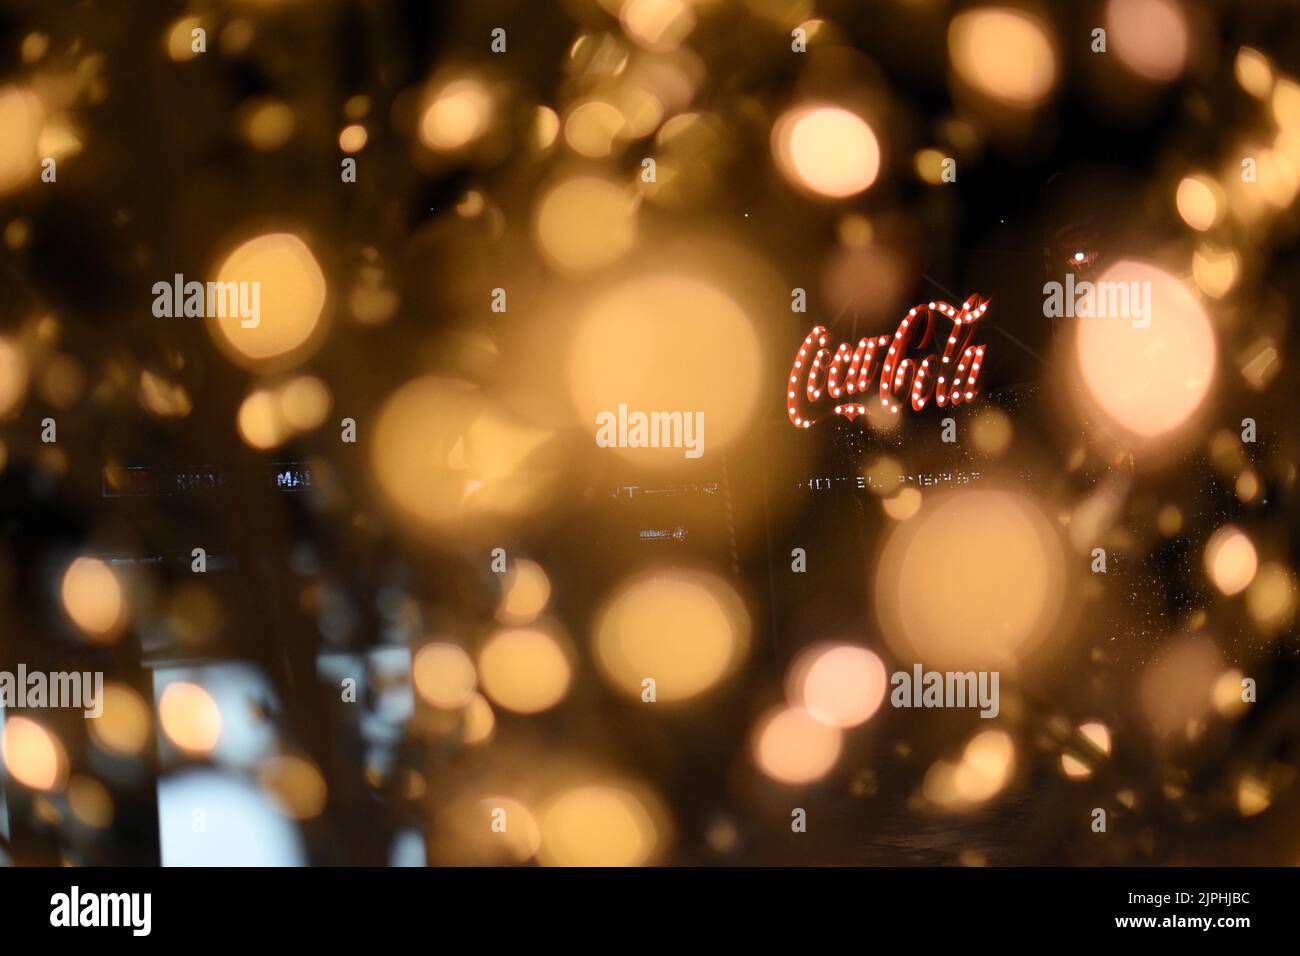 The Coca-Cola logo through intense bokeh lights. Stock Photo